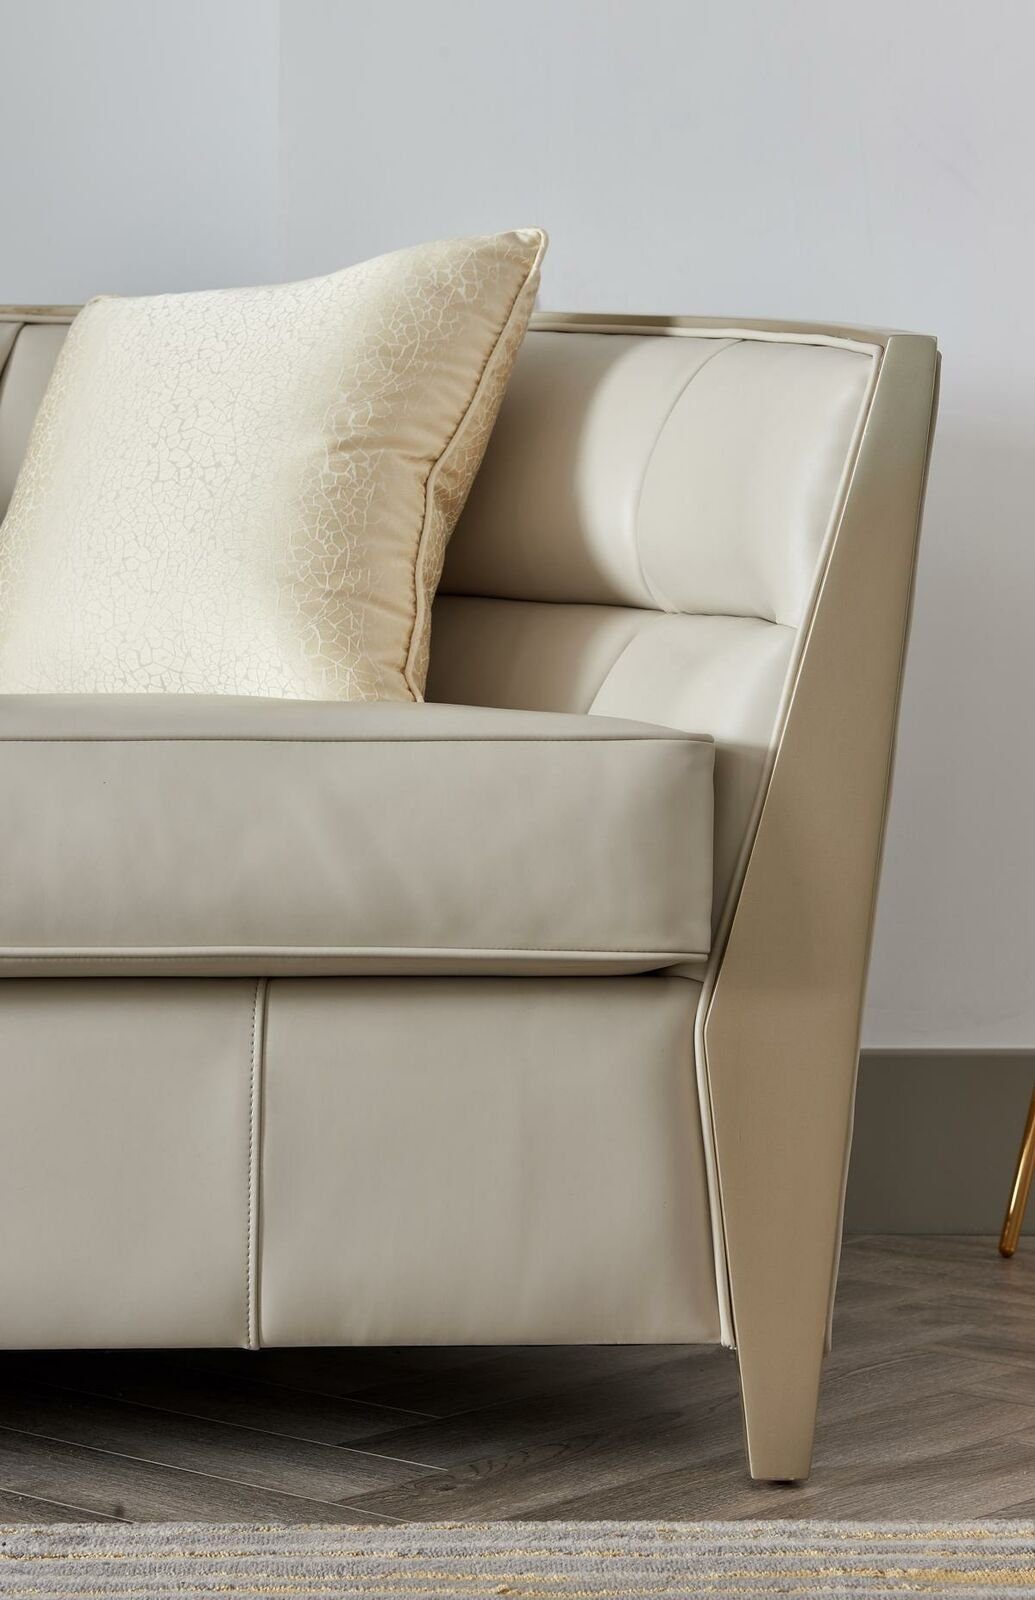 JVmoebel Sofa Sofagarnitur 4+1 Sitzer Luxus Wohnzimmer Polstermöbel, Made in Europe